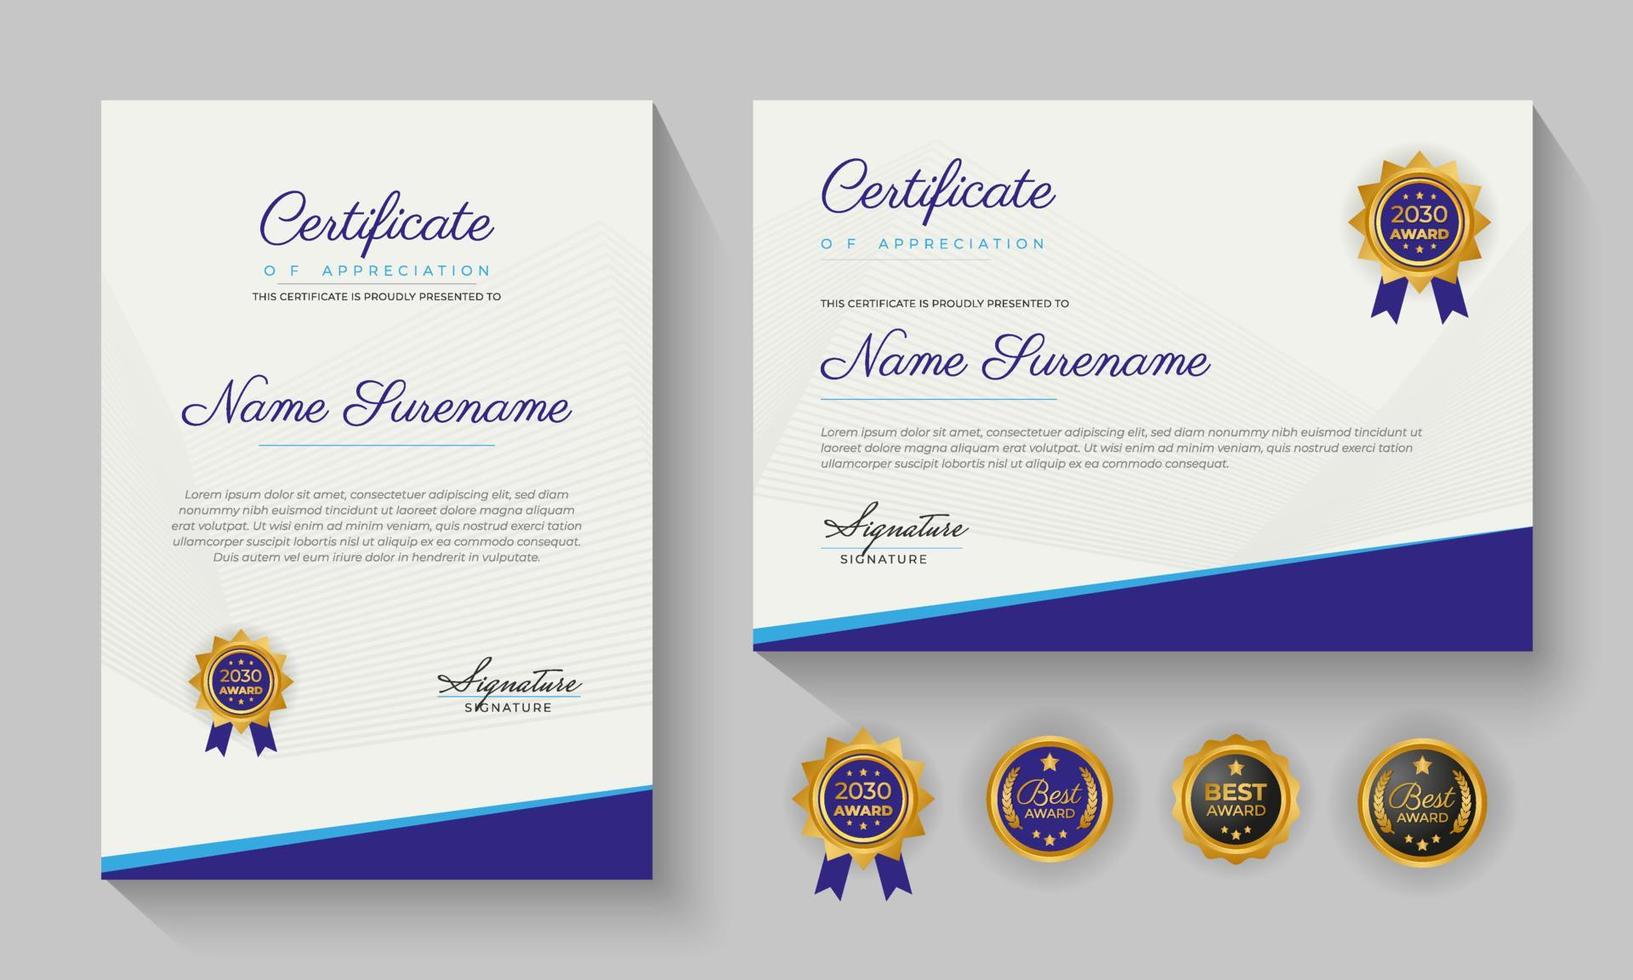 conception de modèle de certificat bleu moderne de réussite ou de certification d'appréciation vecteur